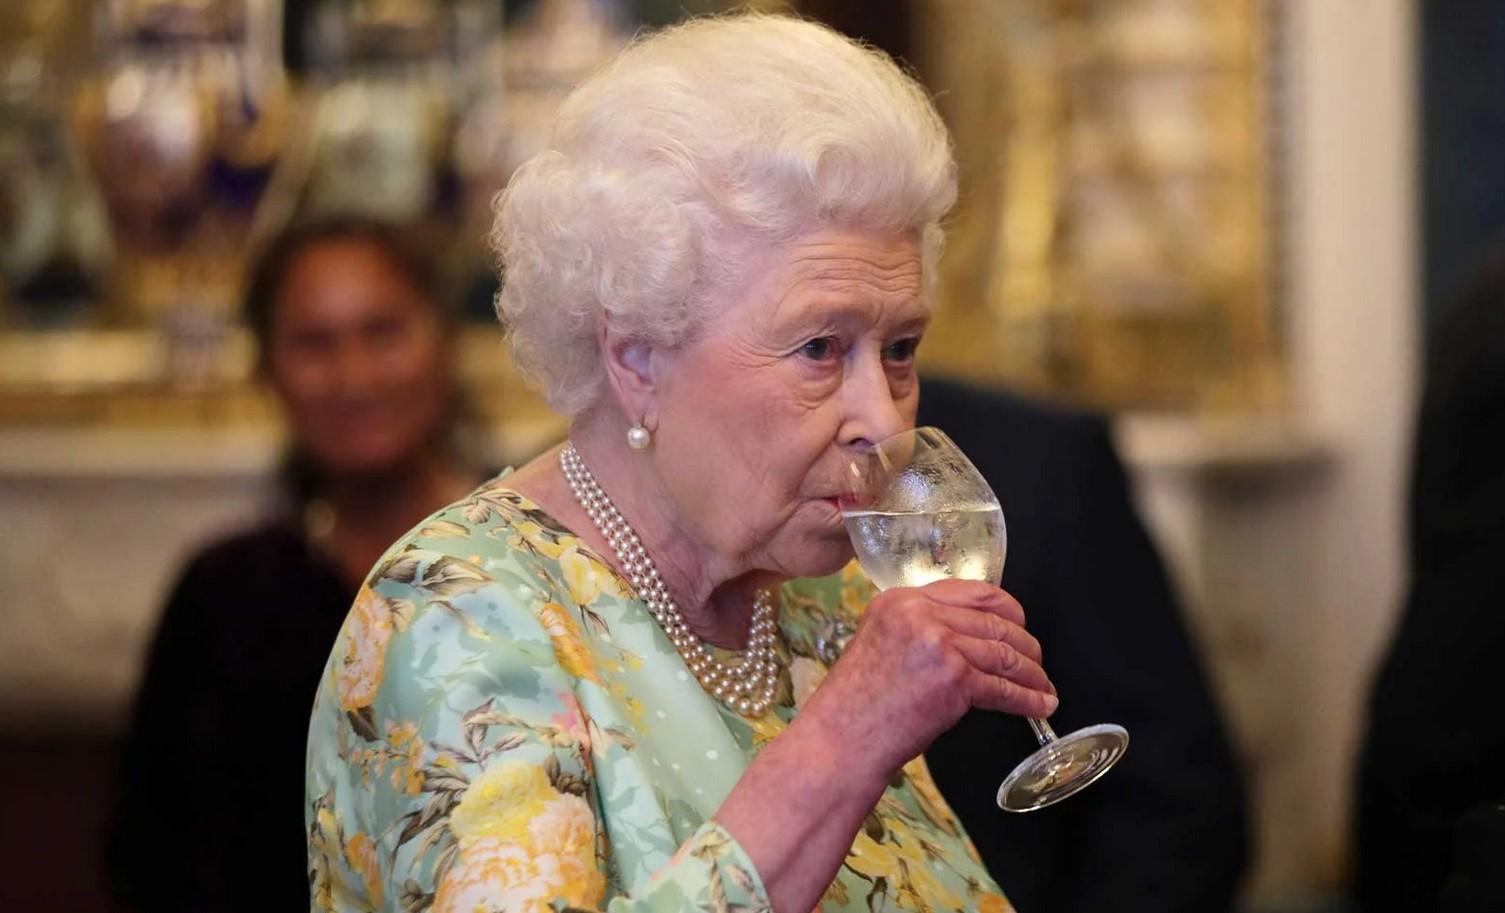 Kraljici Elizabeti u 95. godini zabranjeno omiljeno piće